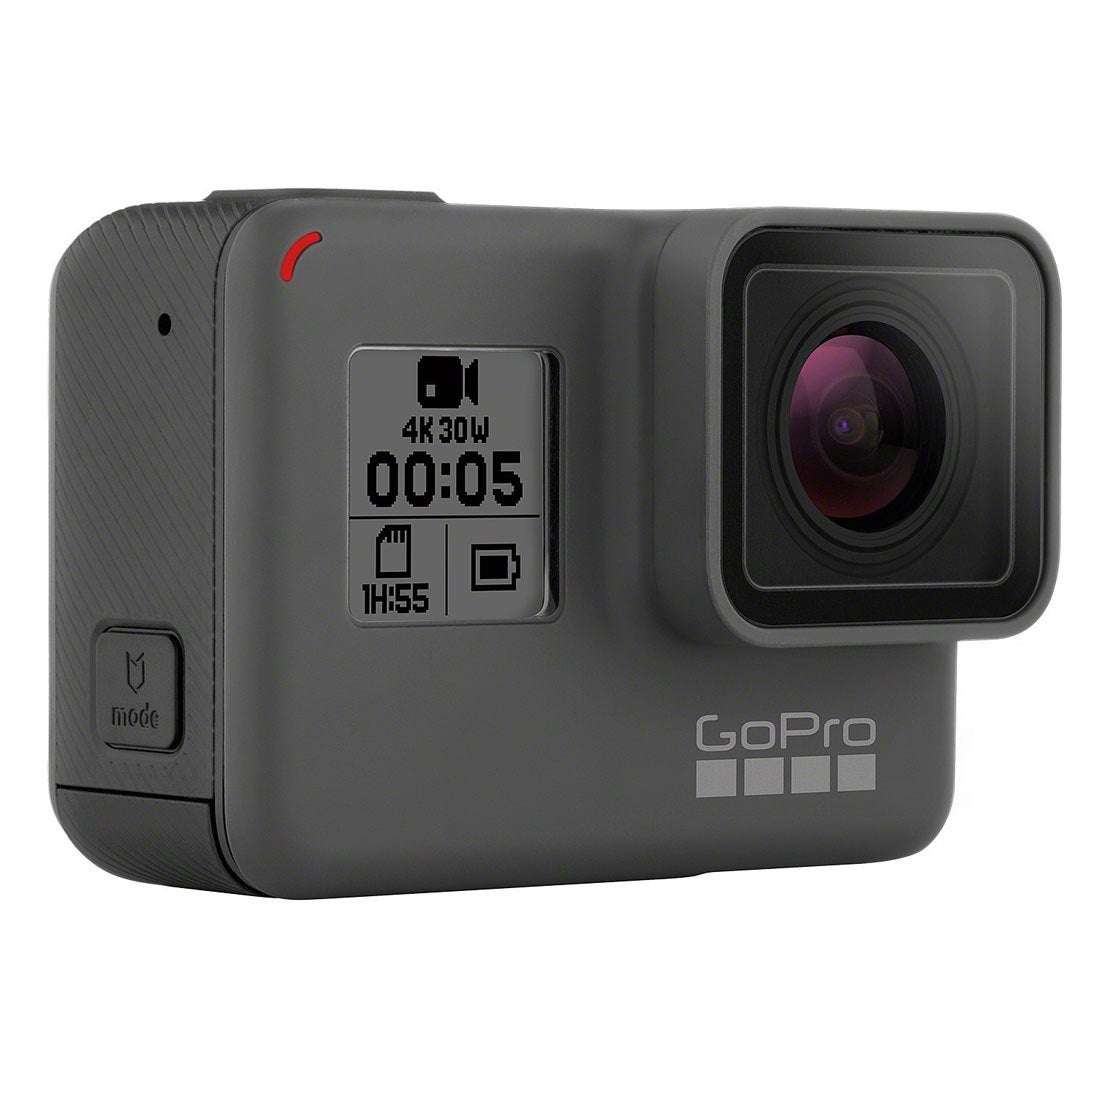 ゴープロ GoPro HERO5 ブラック(国内正規保証品) CHDHX-501 【返品不可 ...